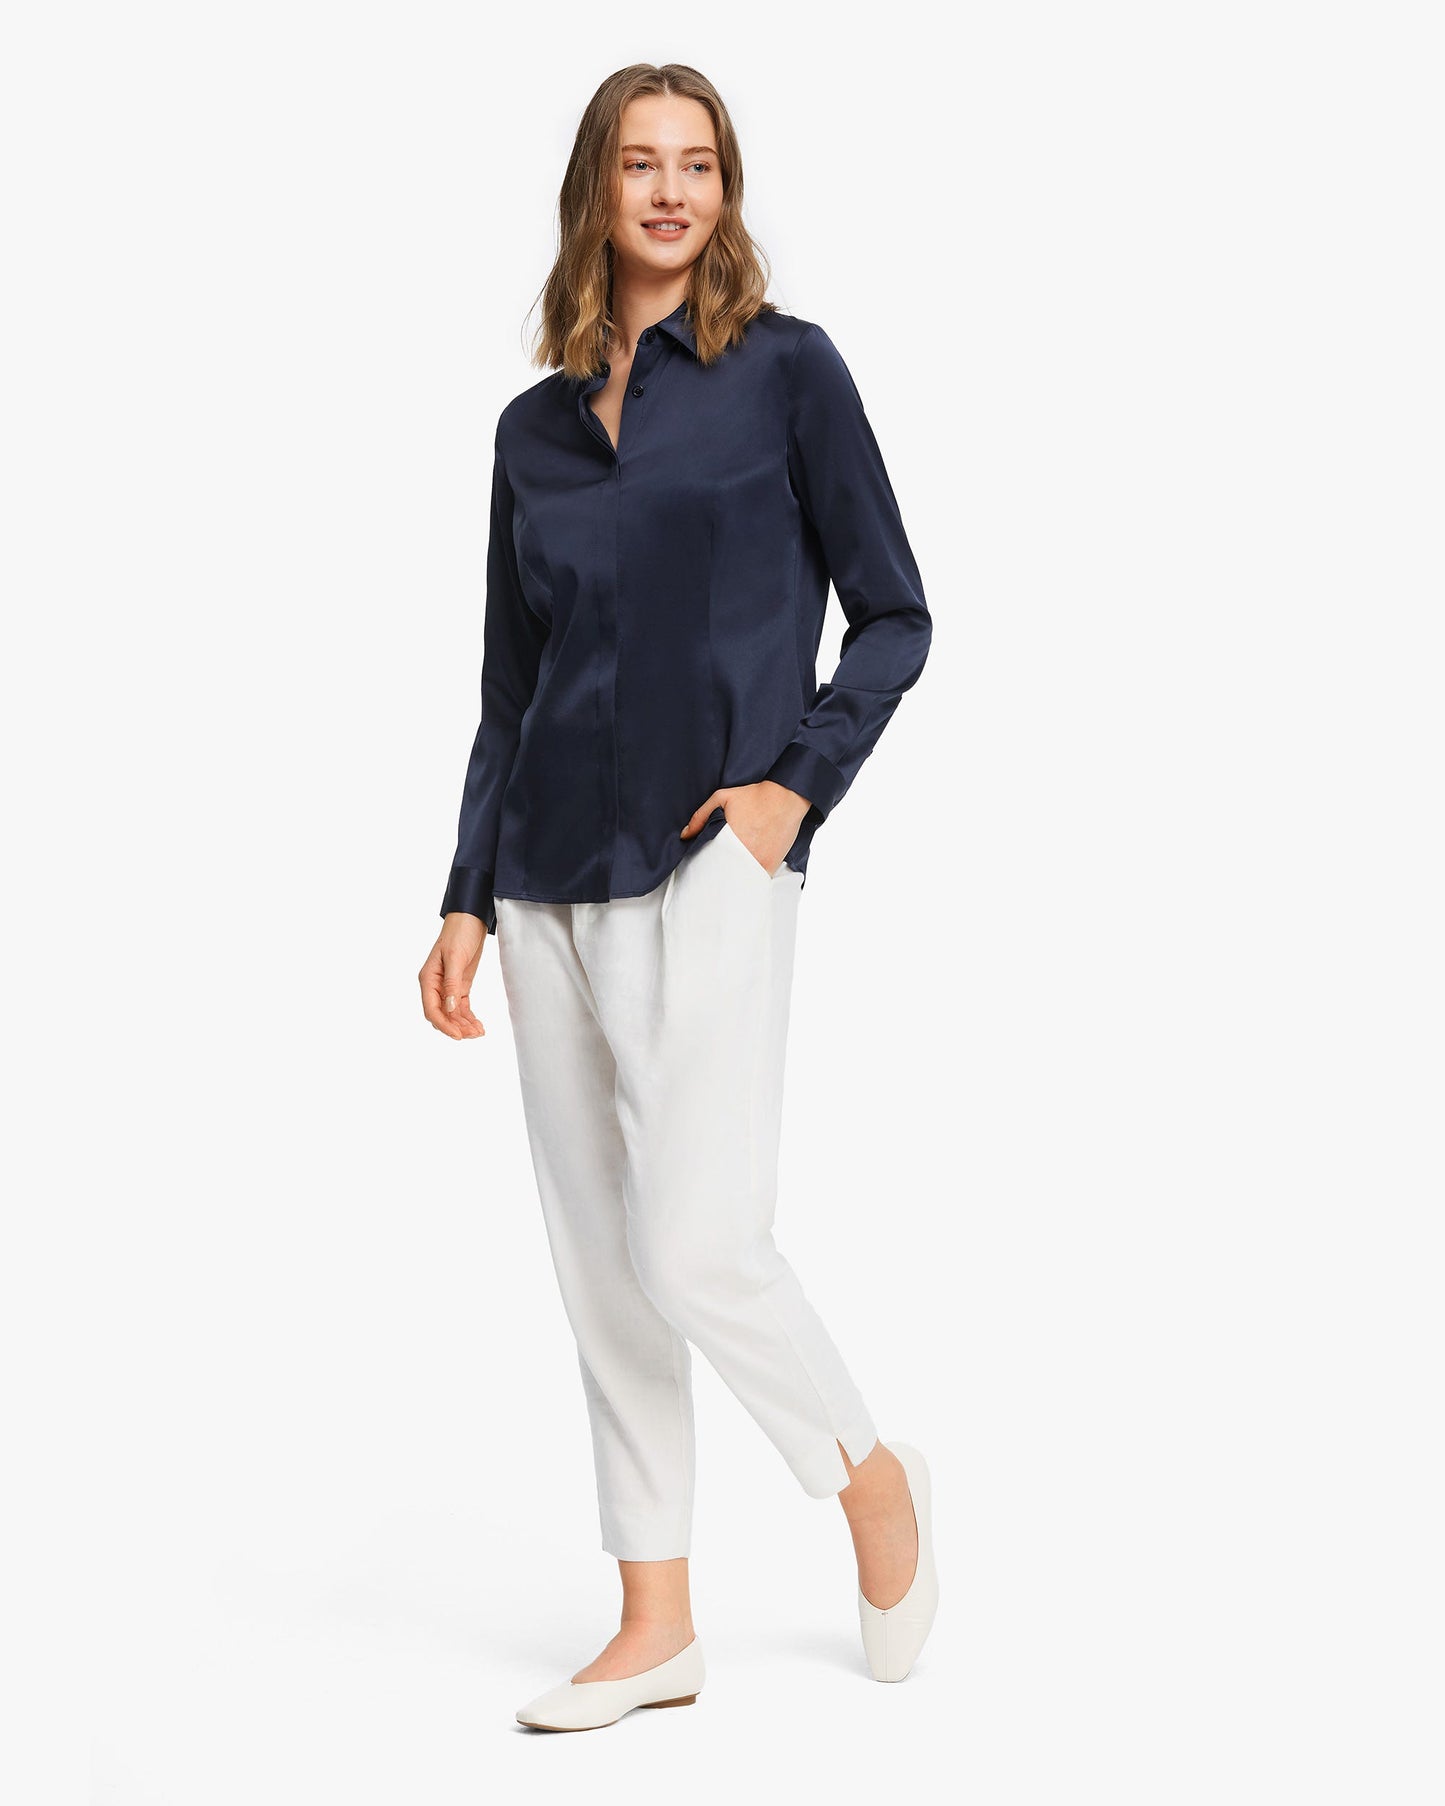 Classic Silk Business Shirt For Women Navy Blue